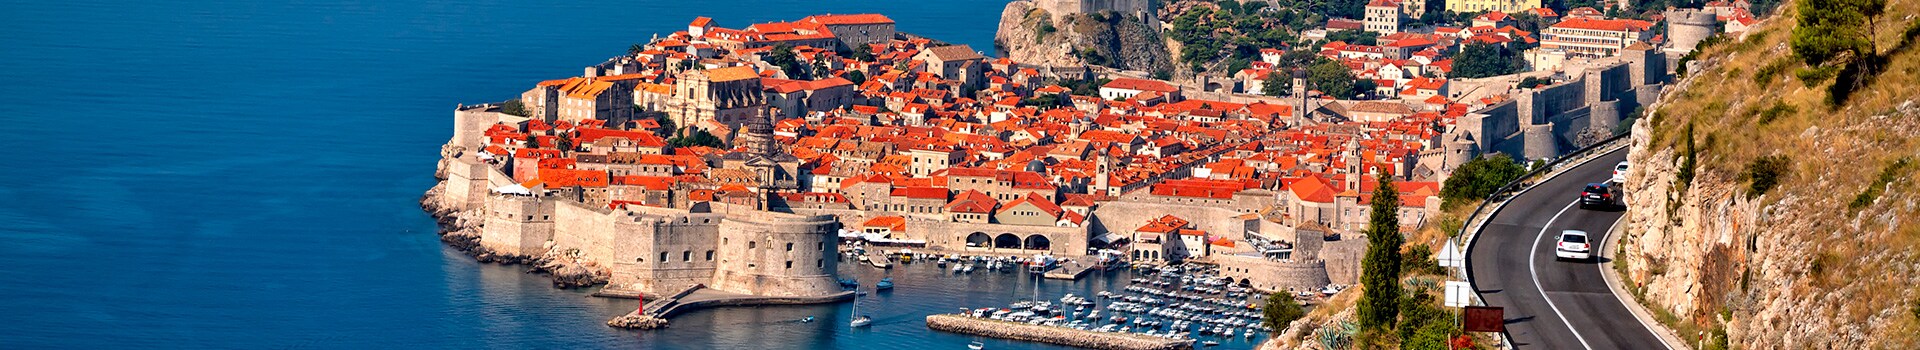 Nizza - Dubrovnik